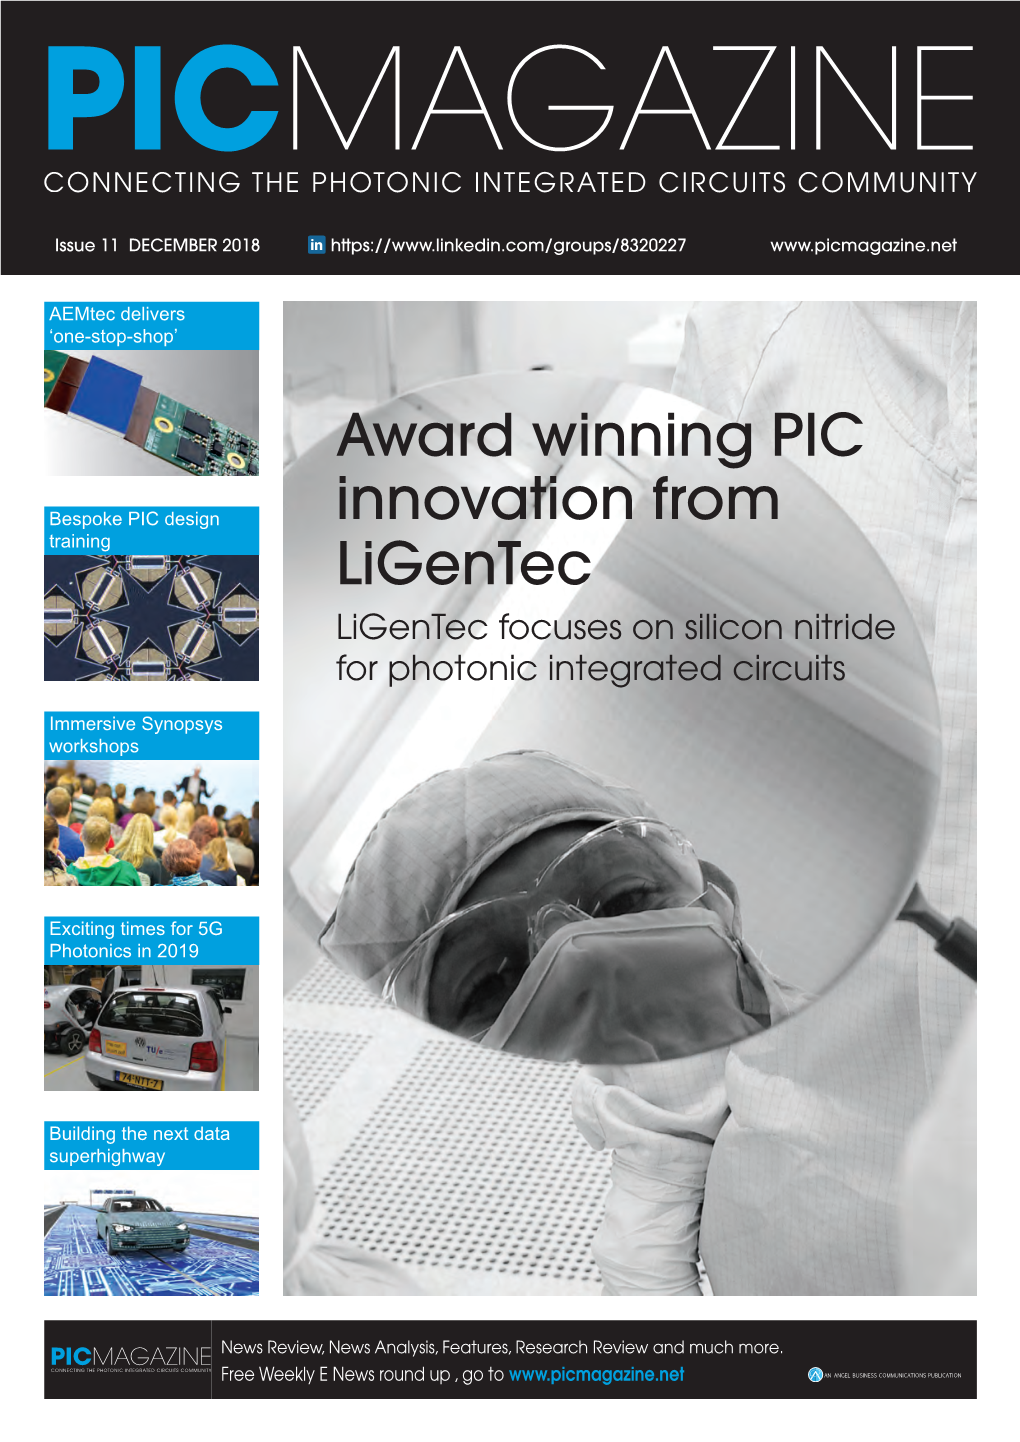 Award Winning PIC Innovation from Ligentec